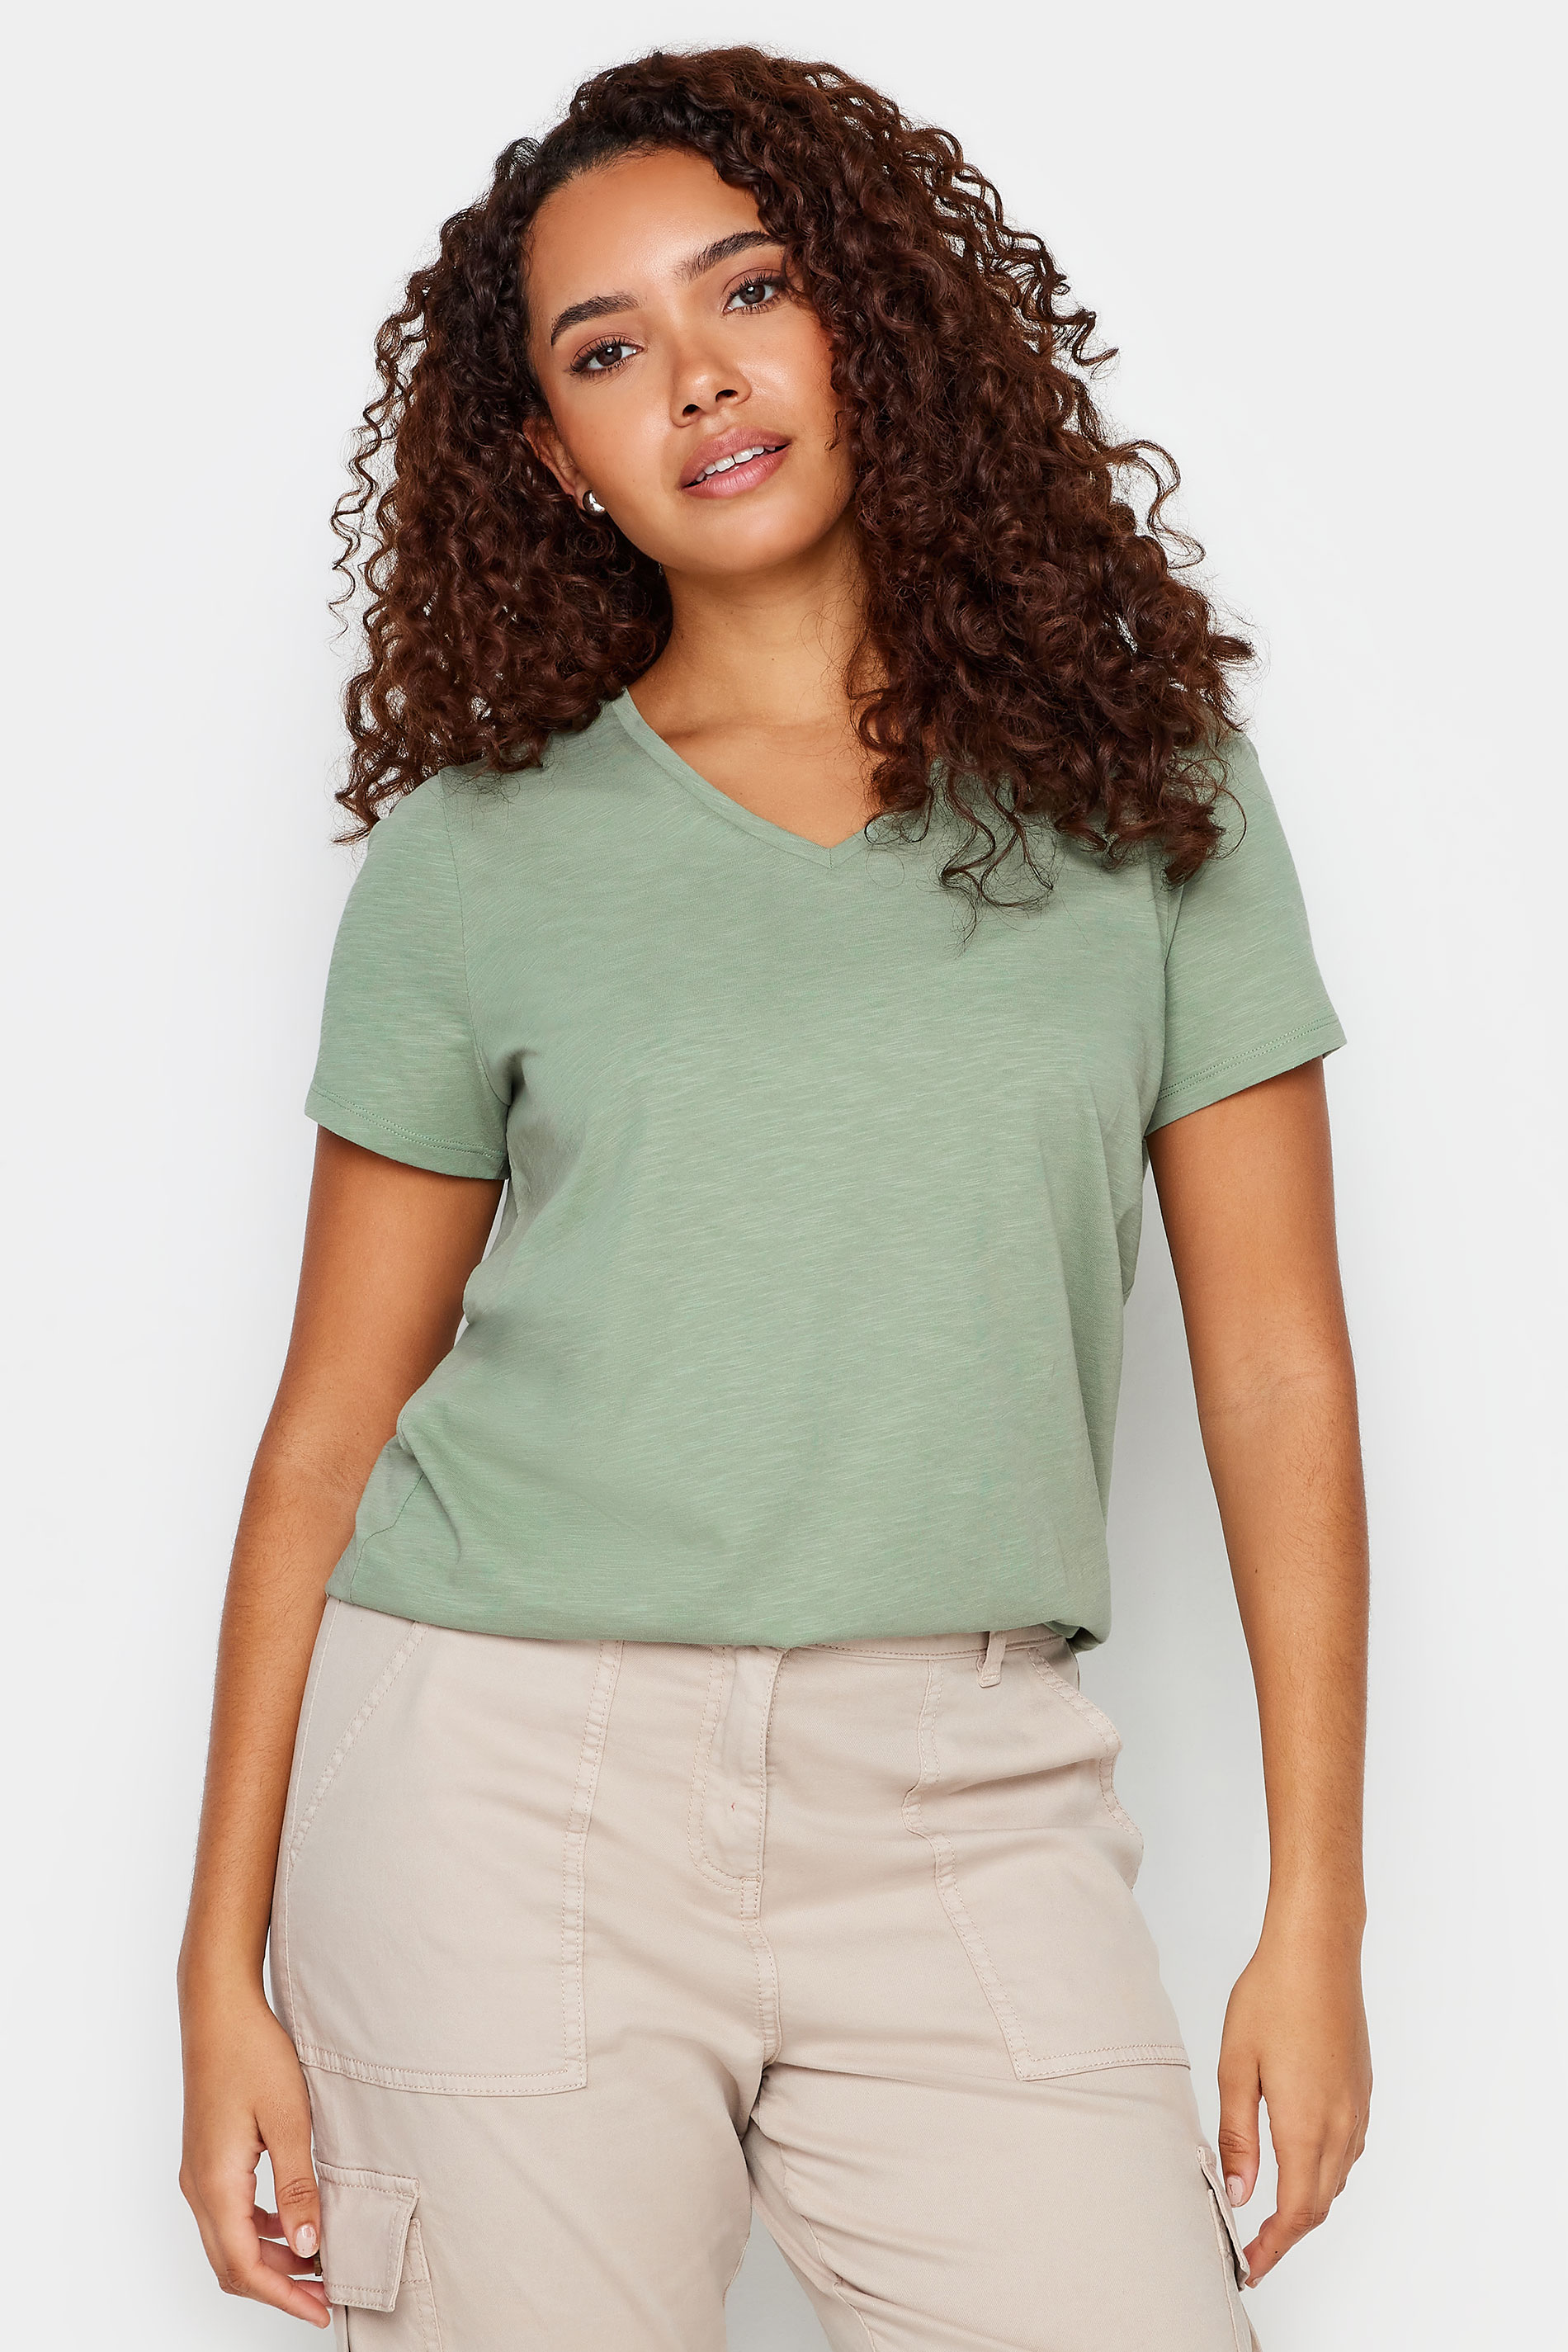 M&Co Pale Green V-Neck Cotton T-Shirt | M&Co 1